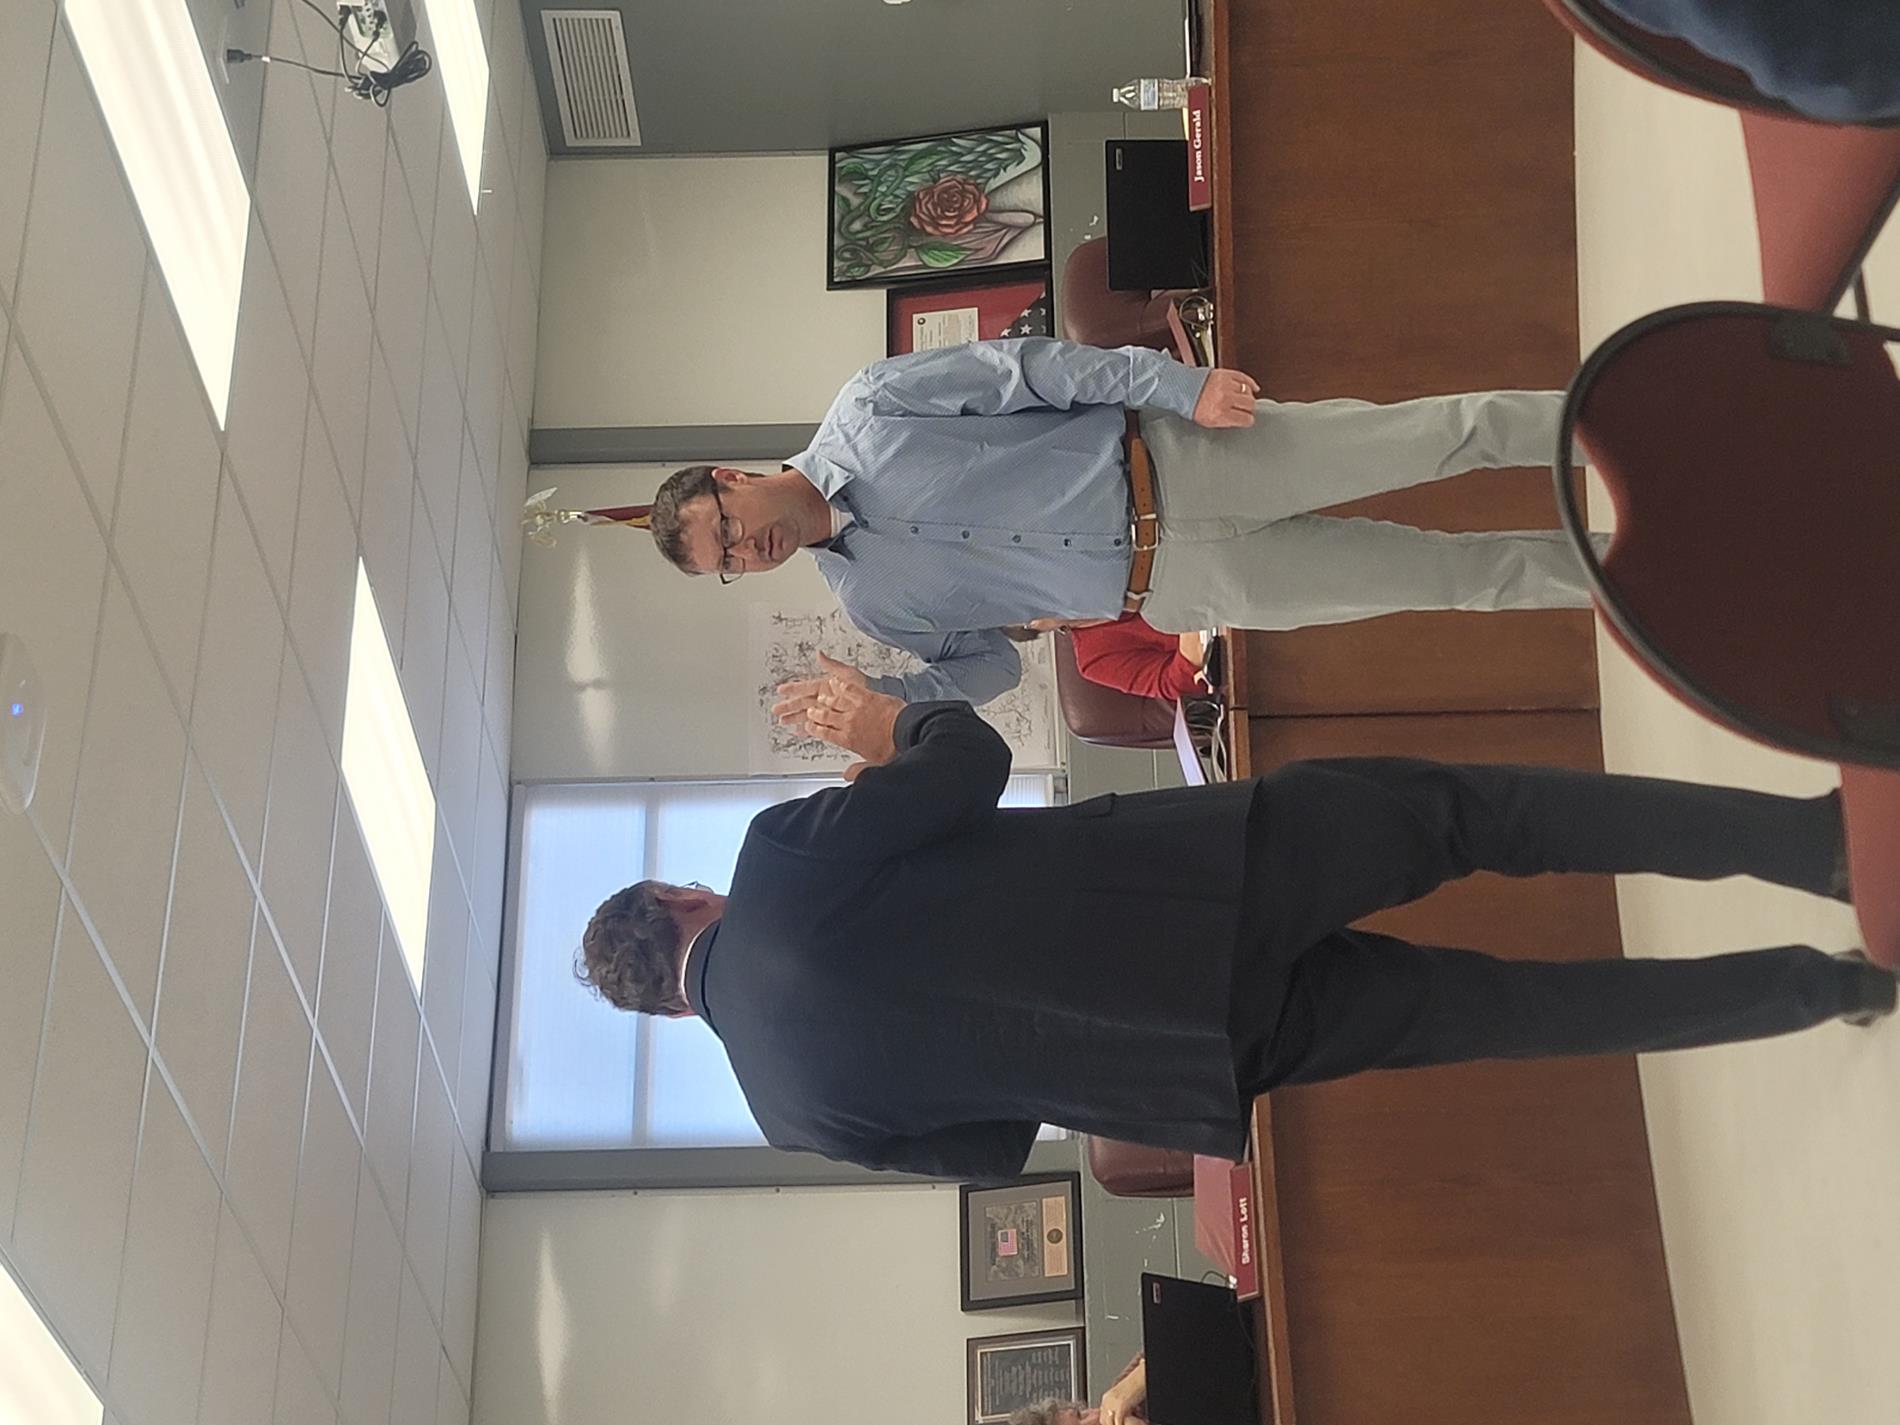 Jason Gerald sworn in as Board Member